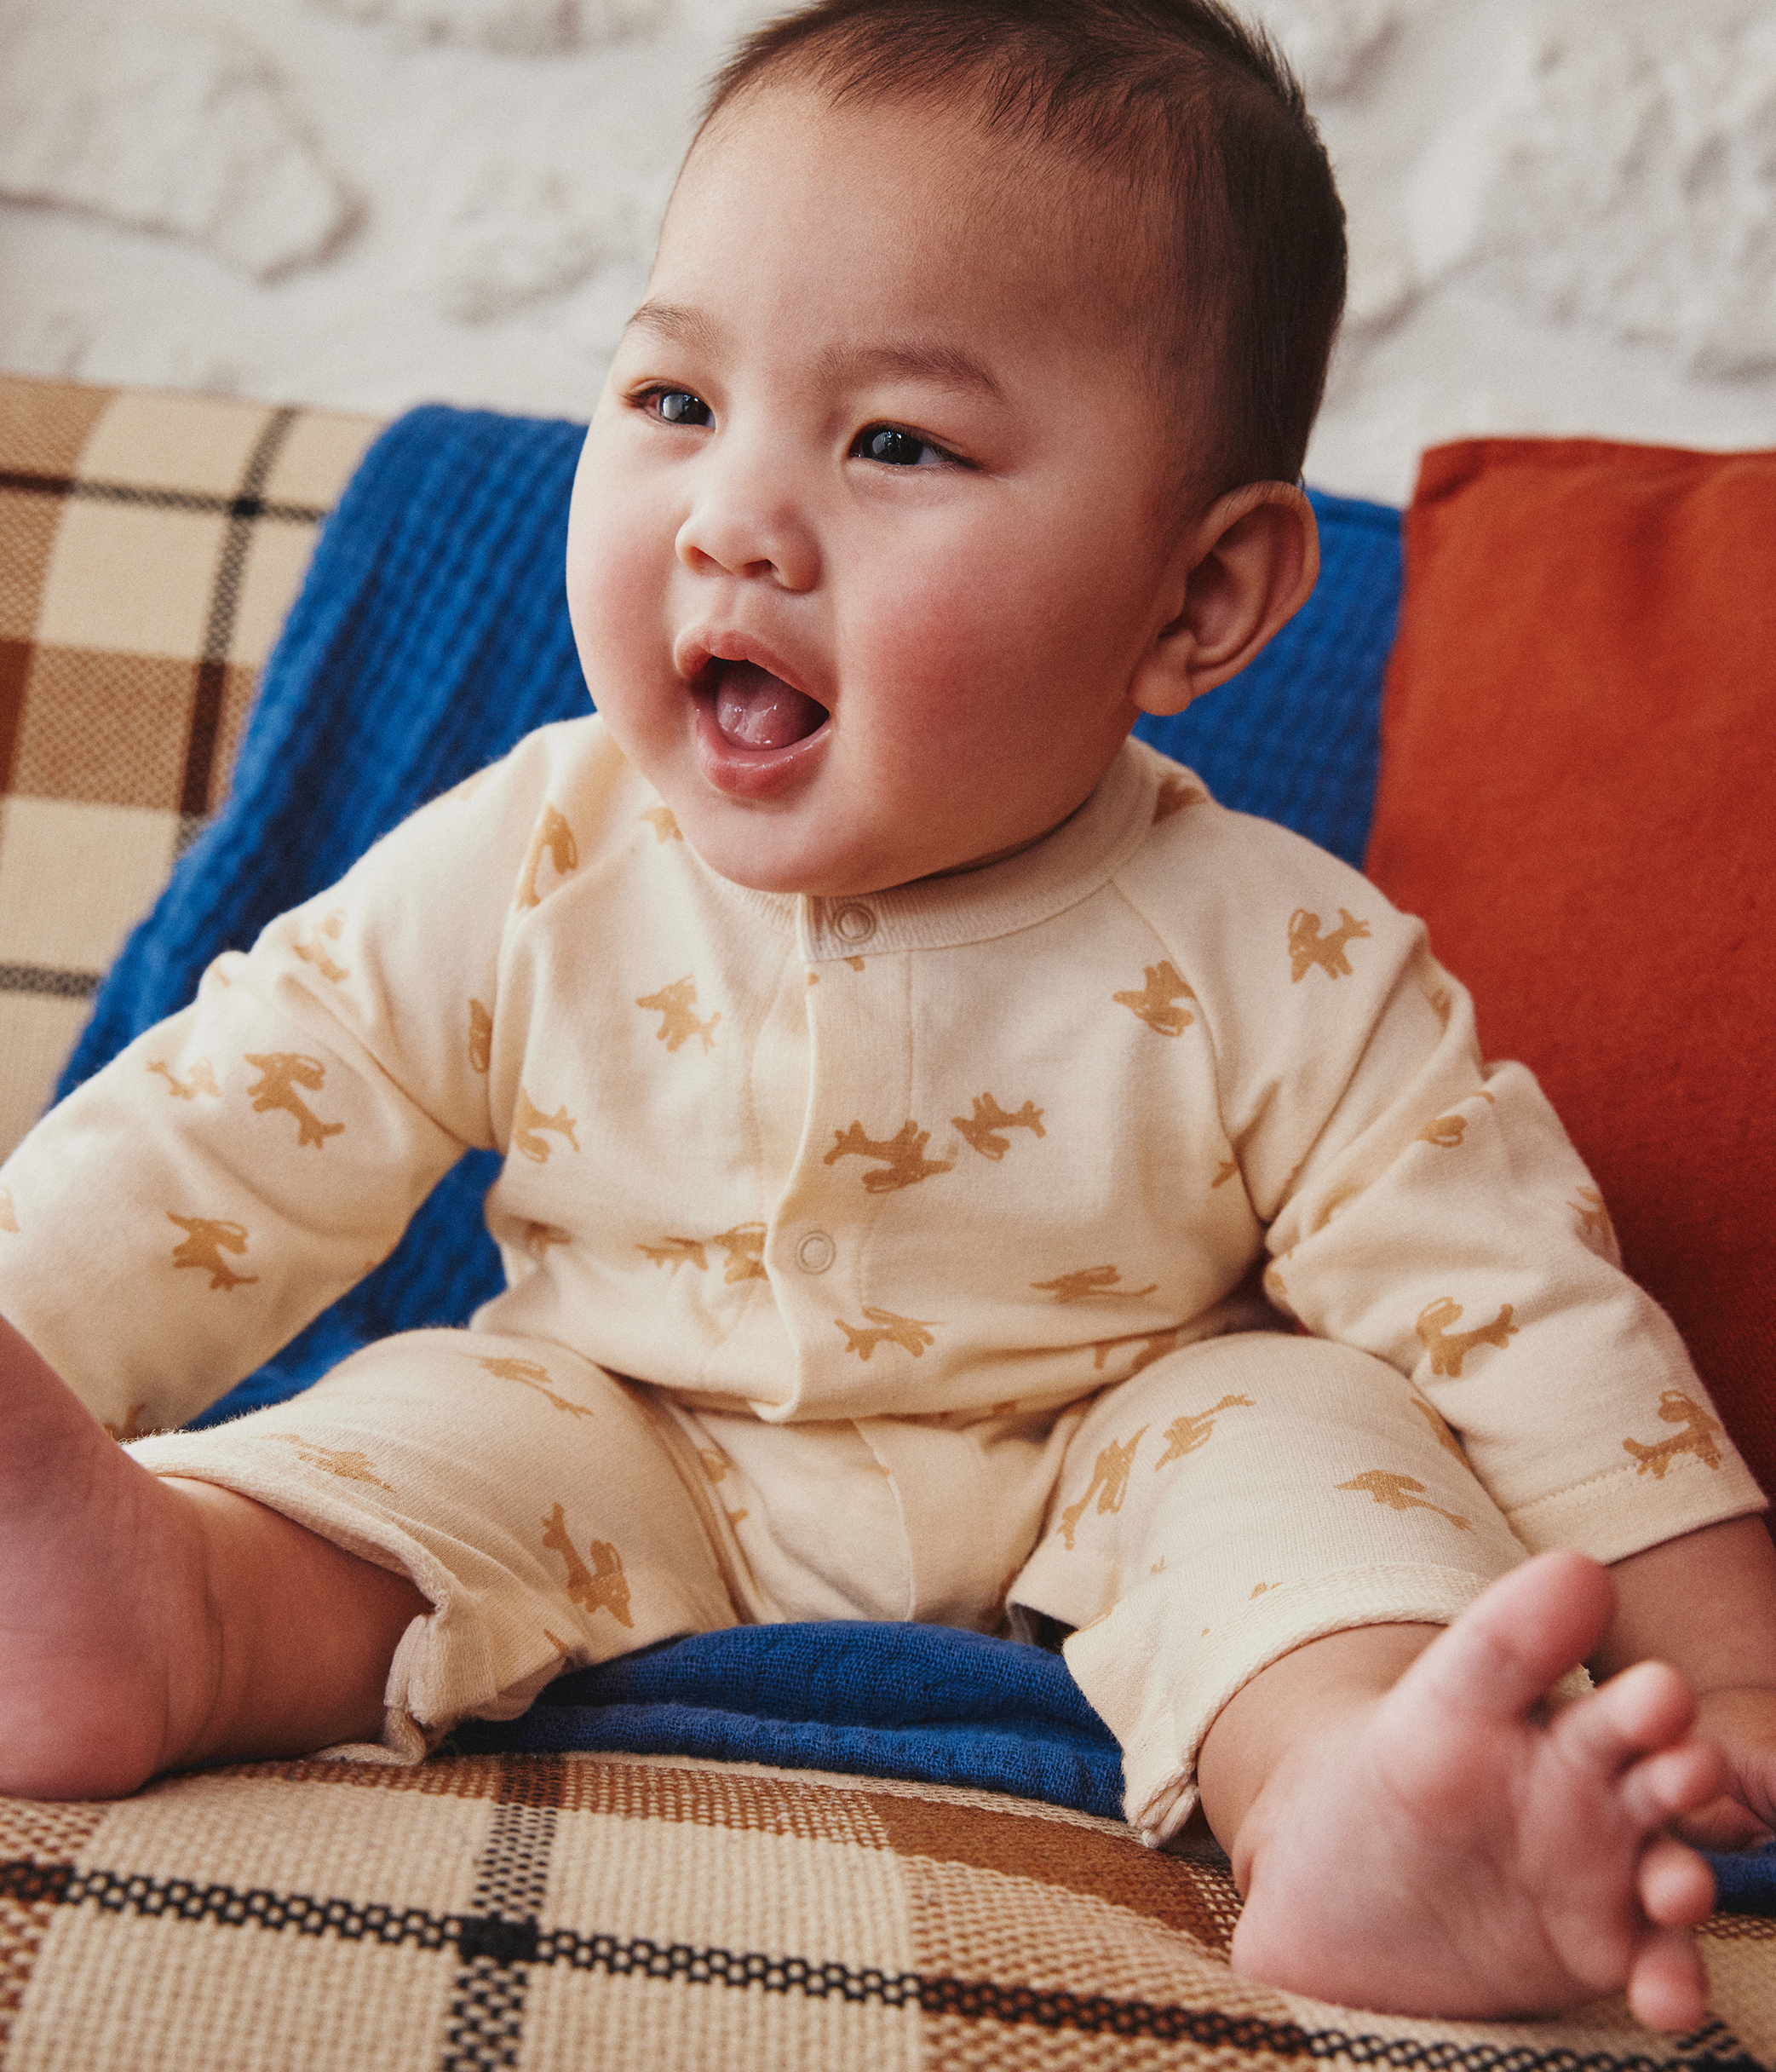 Pyjama velours bébé